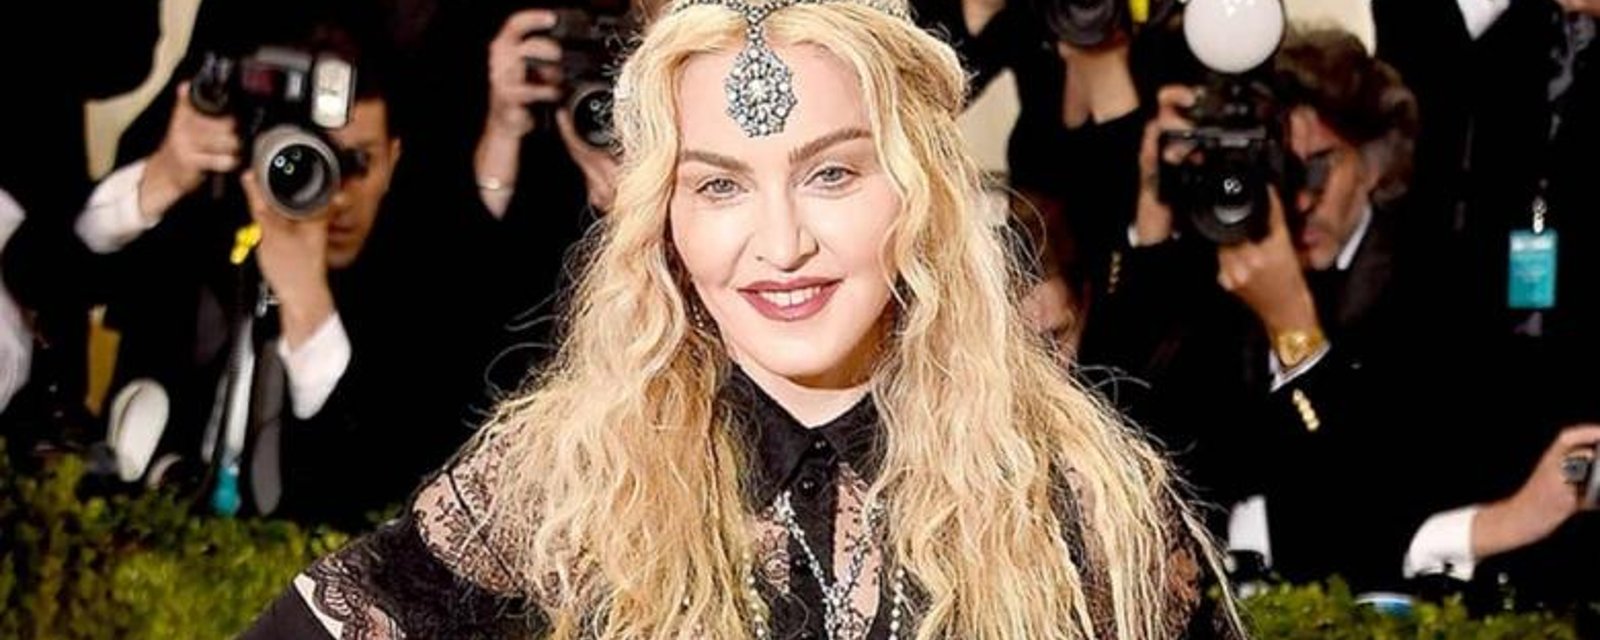 La robe transparente de Madonna fait scandale sur le tapis rouge d'un important gala